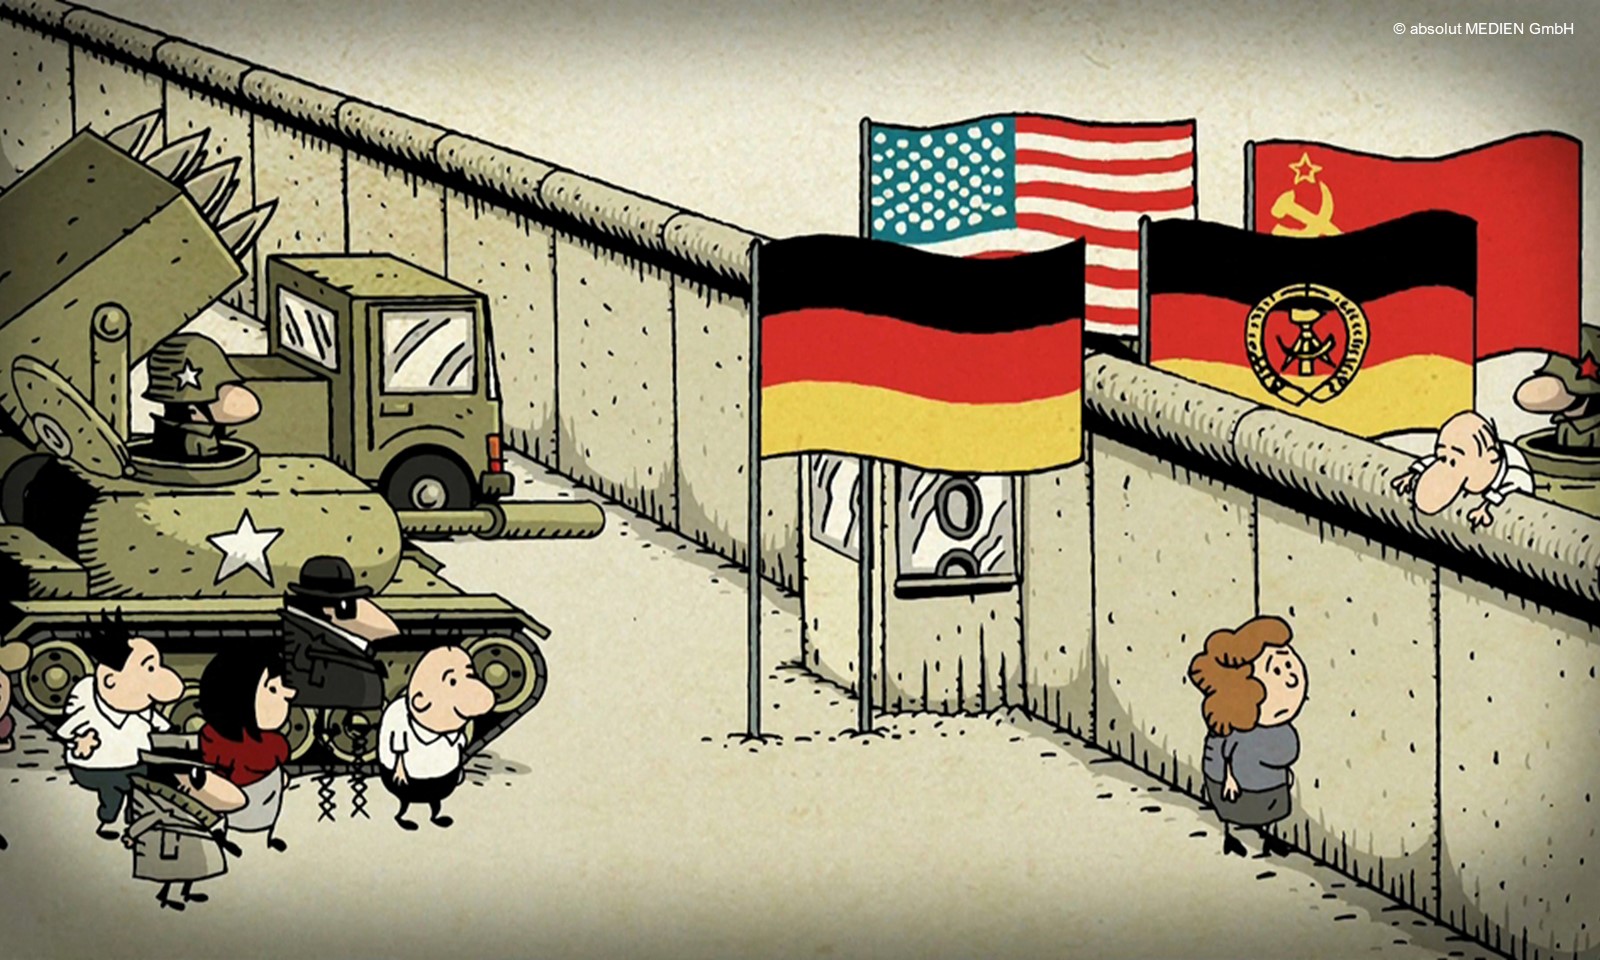 Animierte Szene aus "Die Mauer" © absolut MEDIEN GmbH